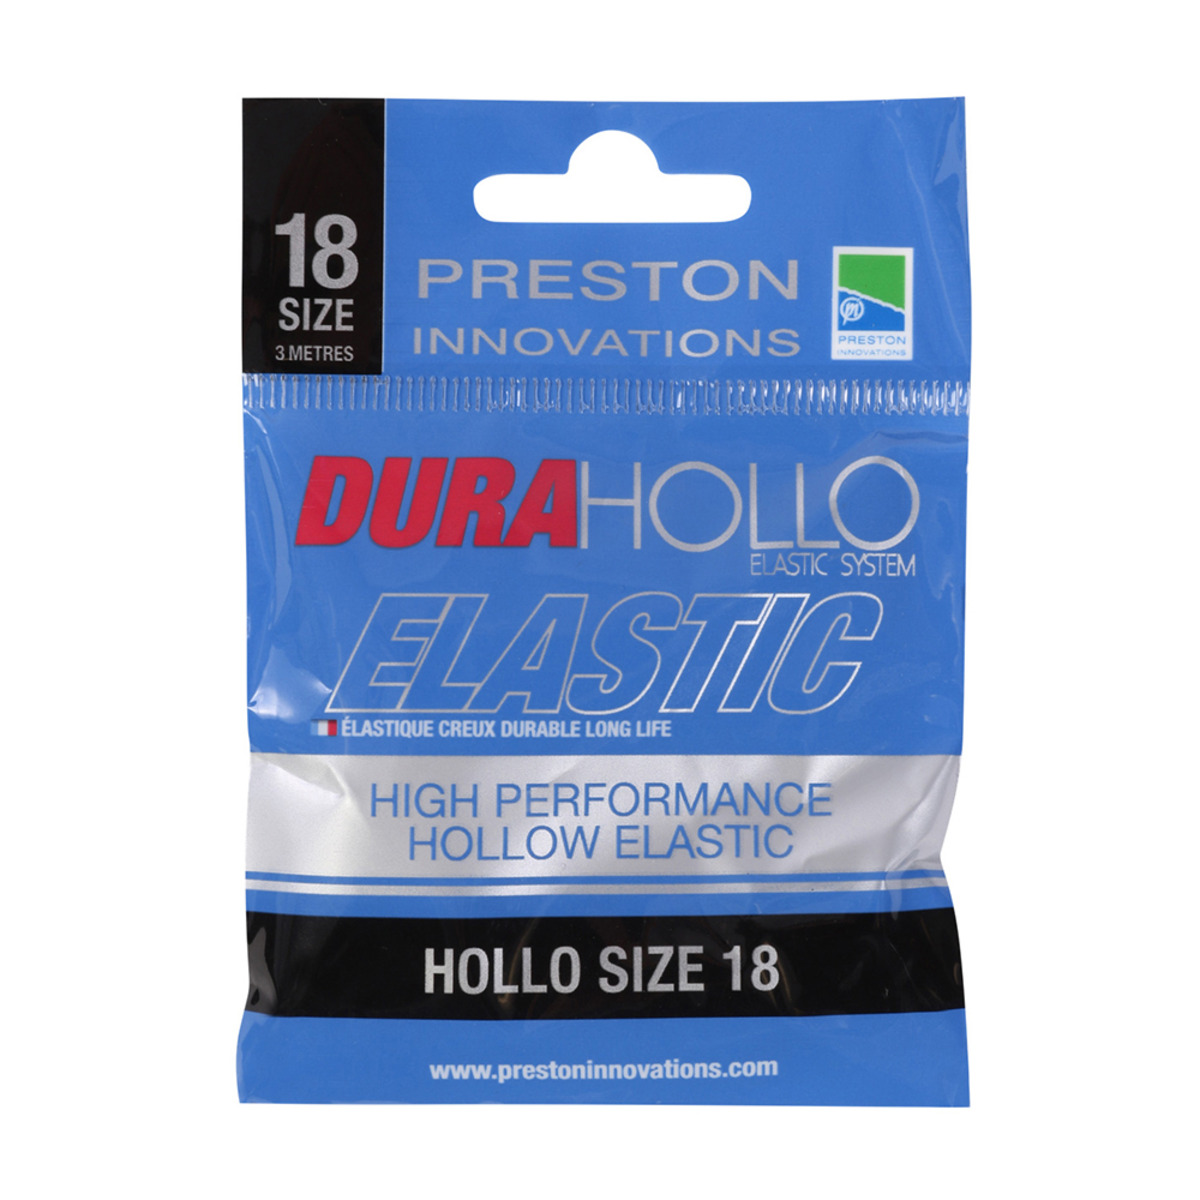 Preston Dura Hollo Elastic - Size 18